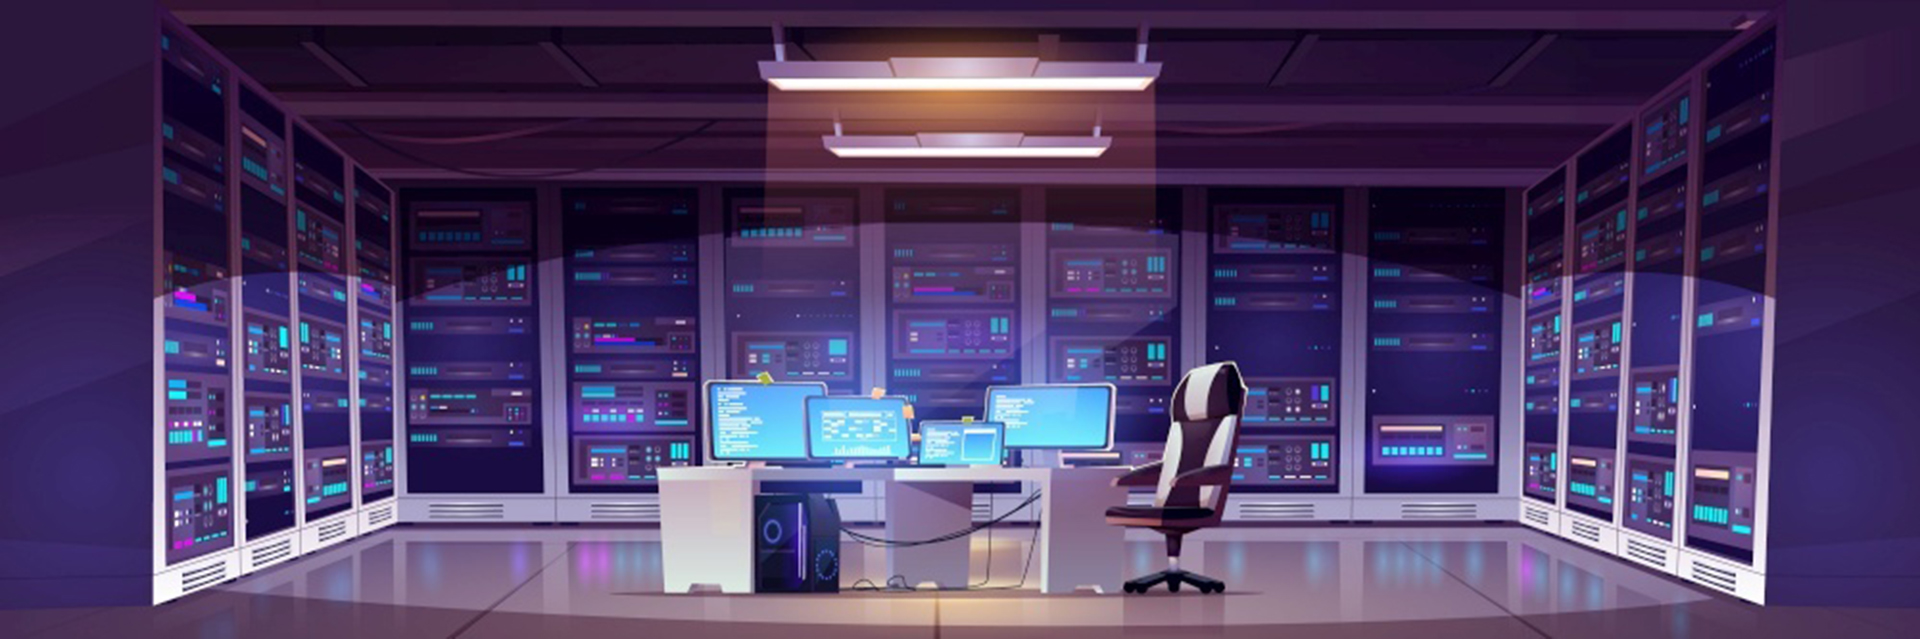 Комната центра обработки данных с серверным оборудованием, стулом и столом с компьютерными мониторами.Векторный мультяшный интерьер офиса хранения информации с панелью управления, стеллажами с оборудованием для сети